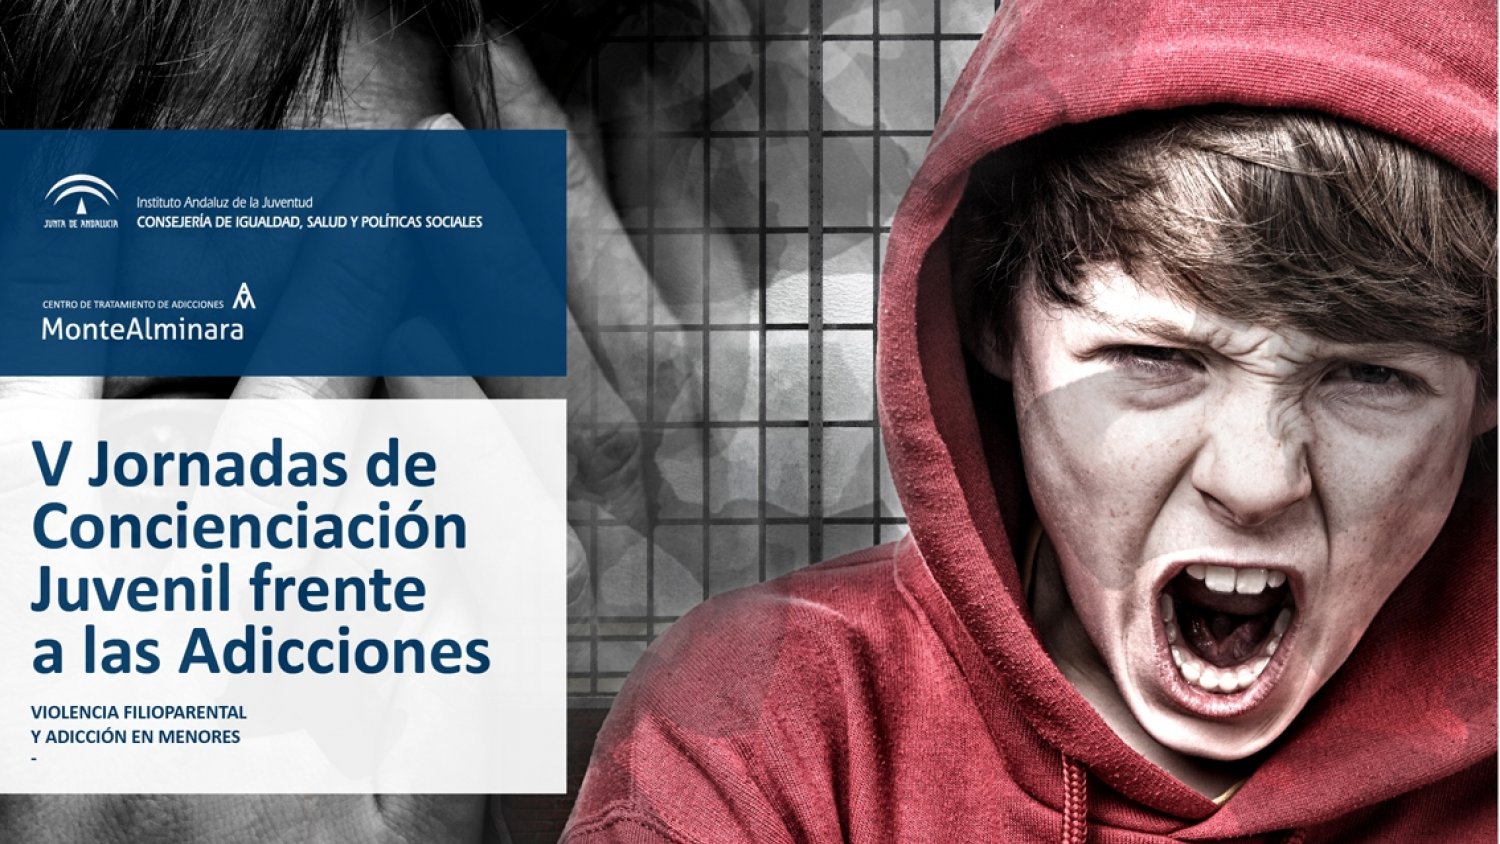 La violencia de hijos a padres, a análisis en las V Jornadas de Concienciación Juvenil frente a las Adicciones